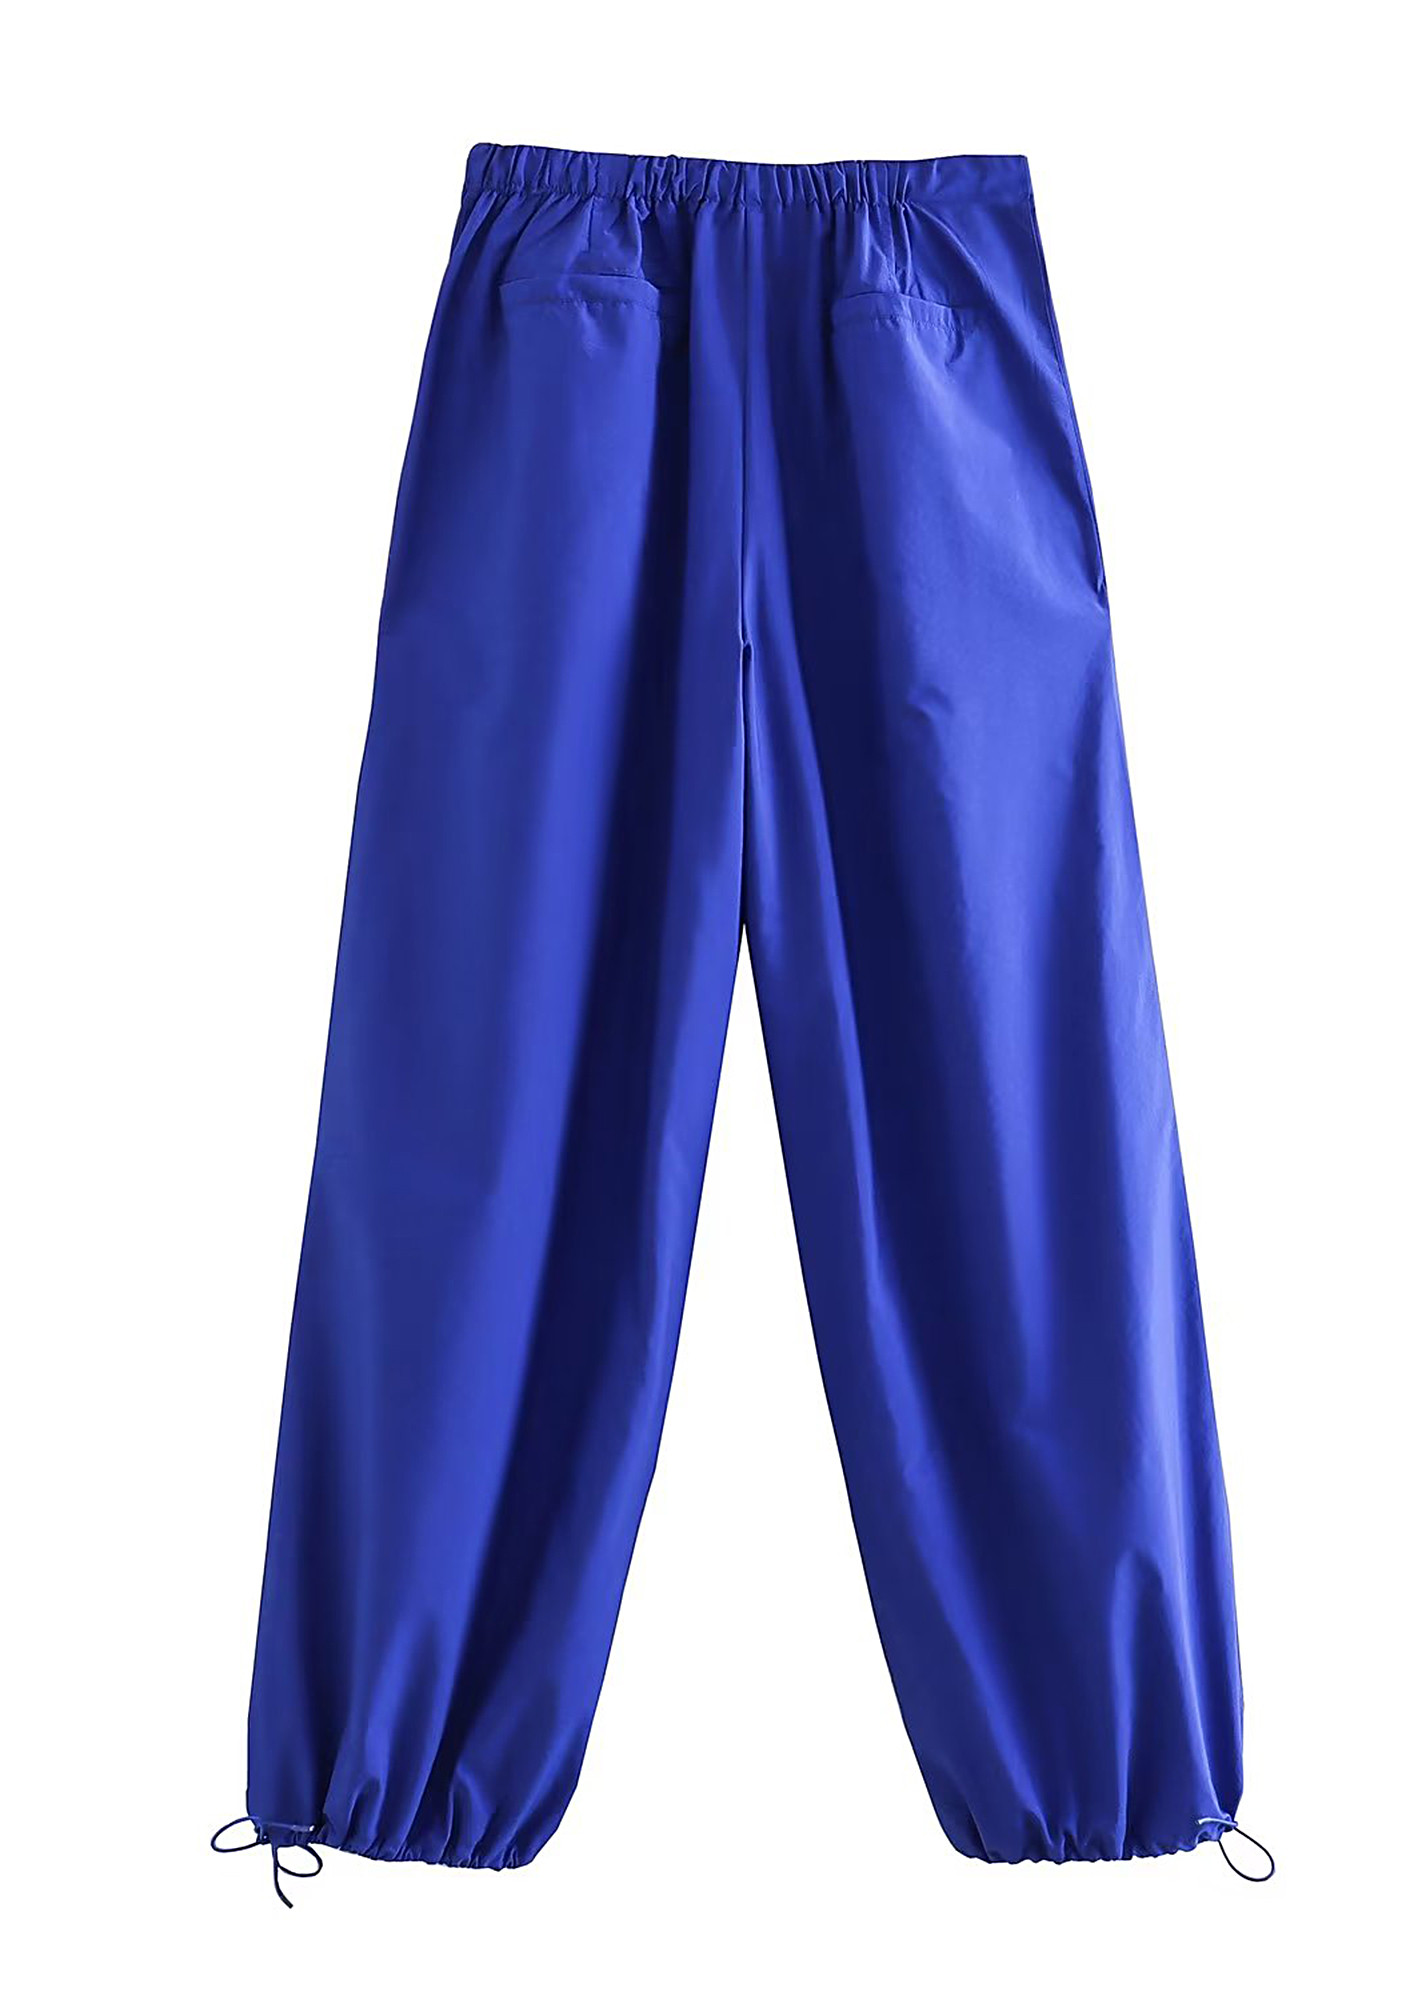 Light Blue Parachute Pants  Aloha Fashion